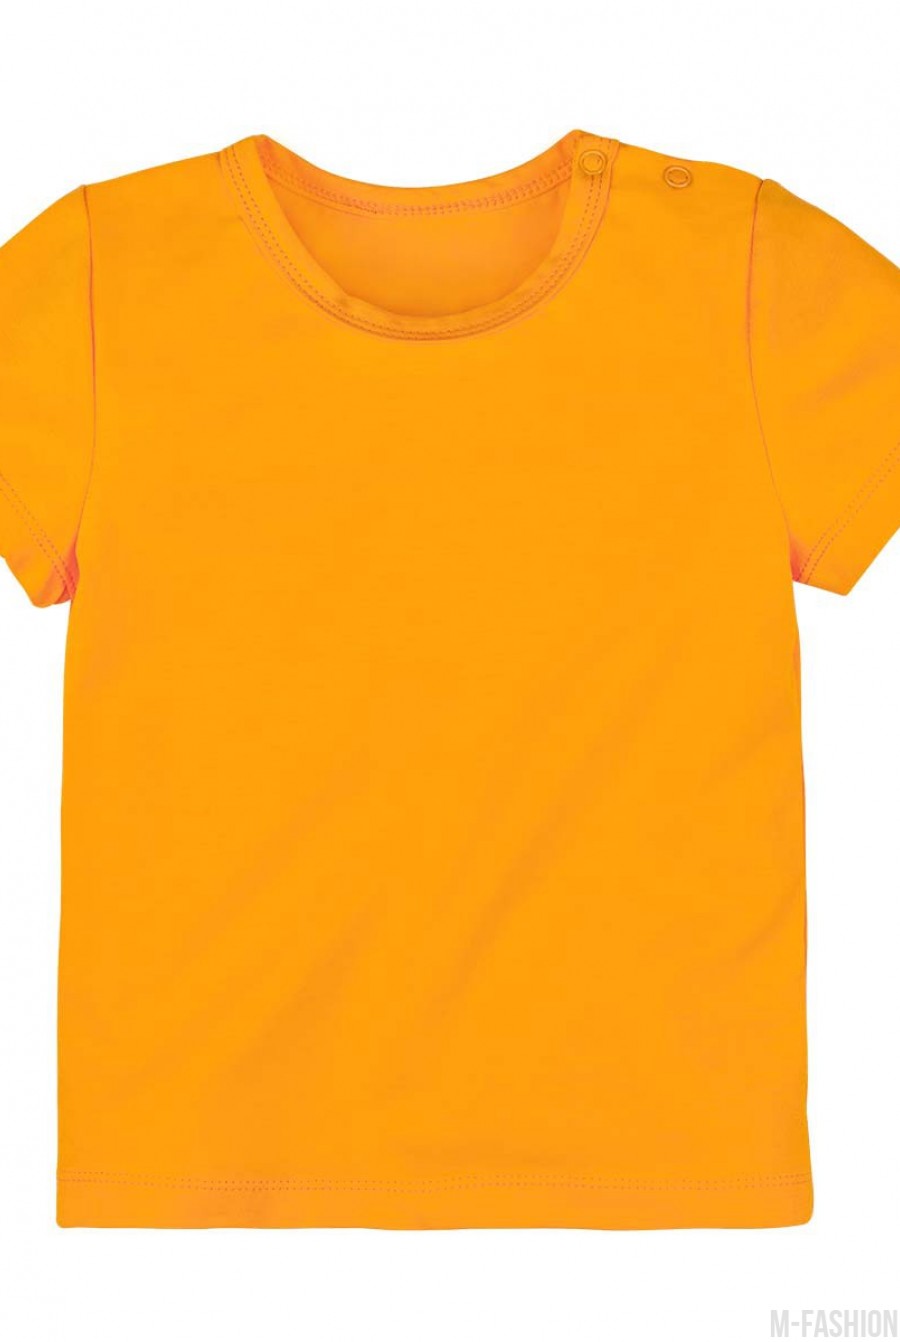 Оранжевая трикотажная футболка с возможностью индивидуальной печати фамилии и номера на принте- Фото 2